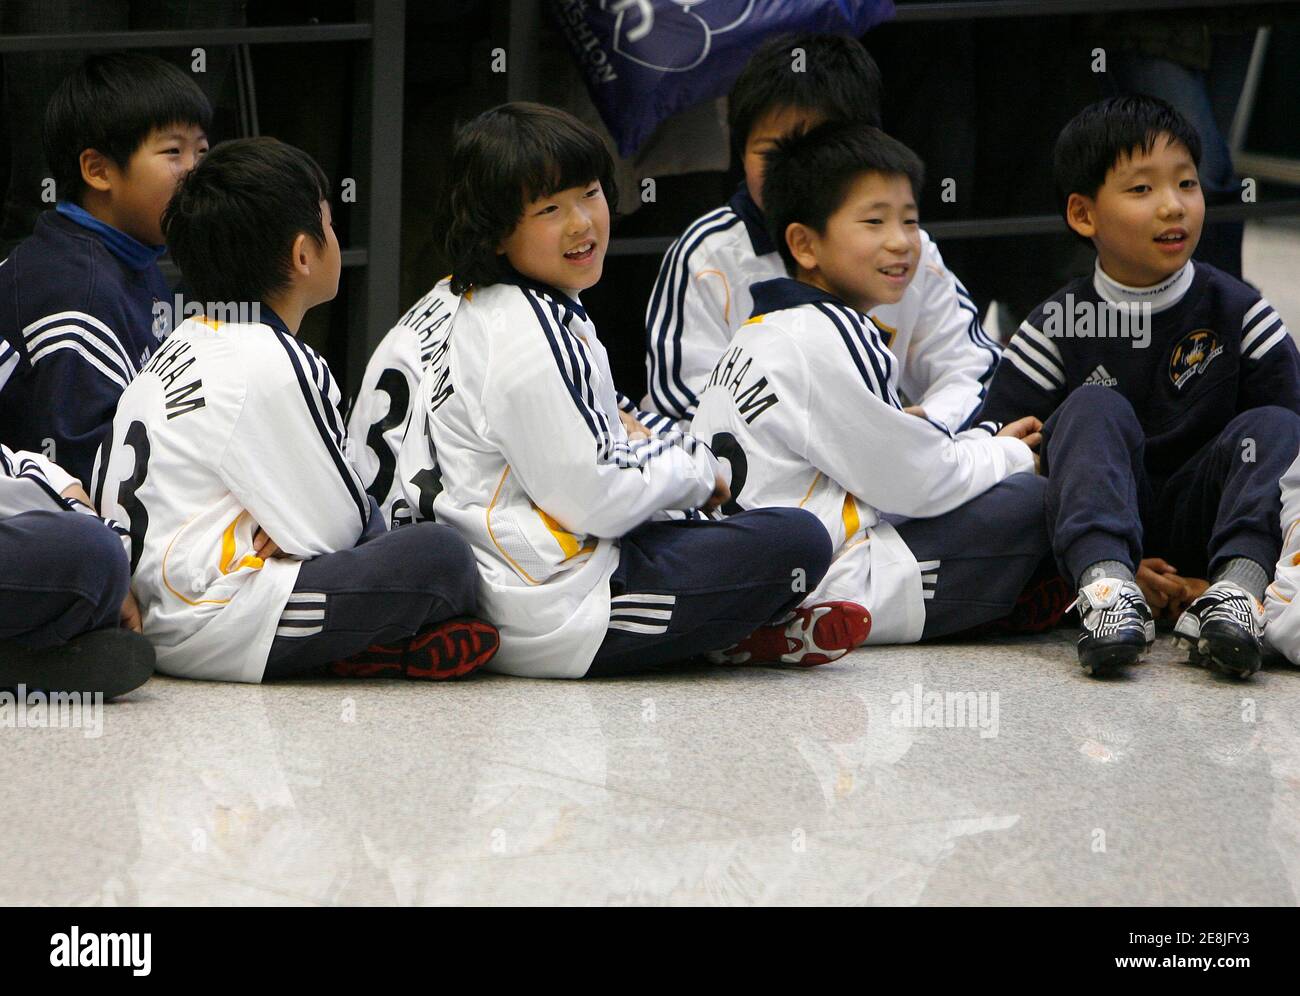 Los Angeles Galaxy Hemden mit Mittelfeldspieler Beckhams Namen darauf, Kinder warten auf seine Ankunft am internationalen Flughafen Incheon westlich von Seoul, 26. Februar 2008.    REUTERS/Jo Yong-Hak (Südkorea) Stockfoto